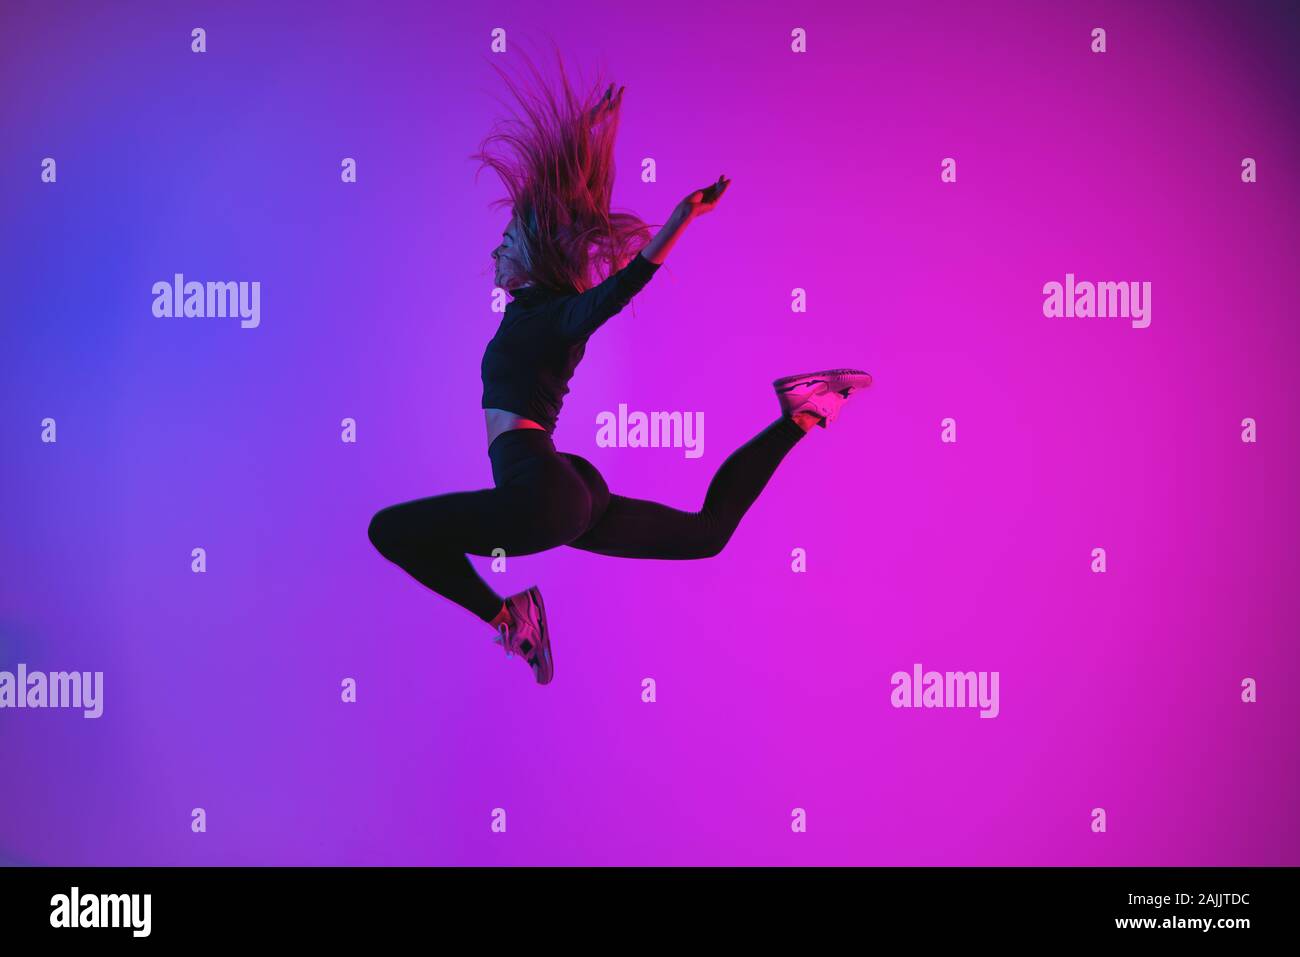 Sportivo da donna carismatica jumping contro colorati di colori alla moda. Atletica Giovane ragazza nel momento di salto in studio Foto Stock